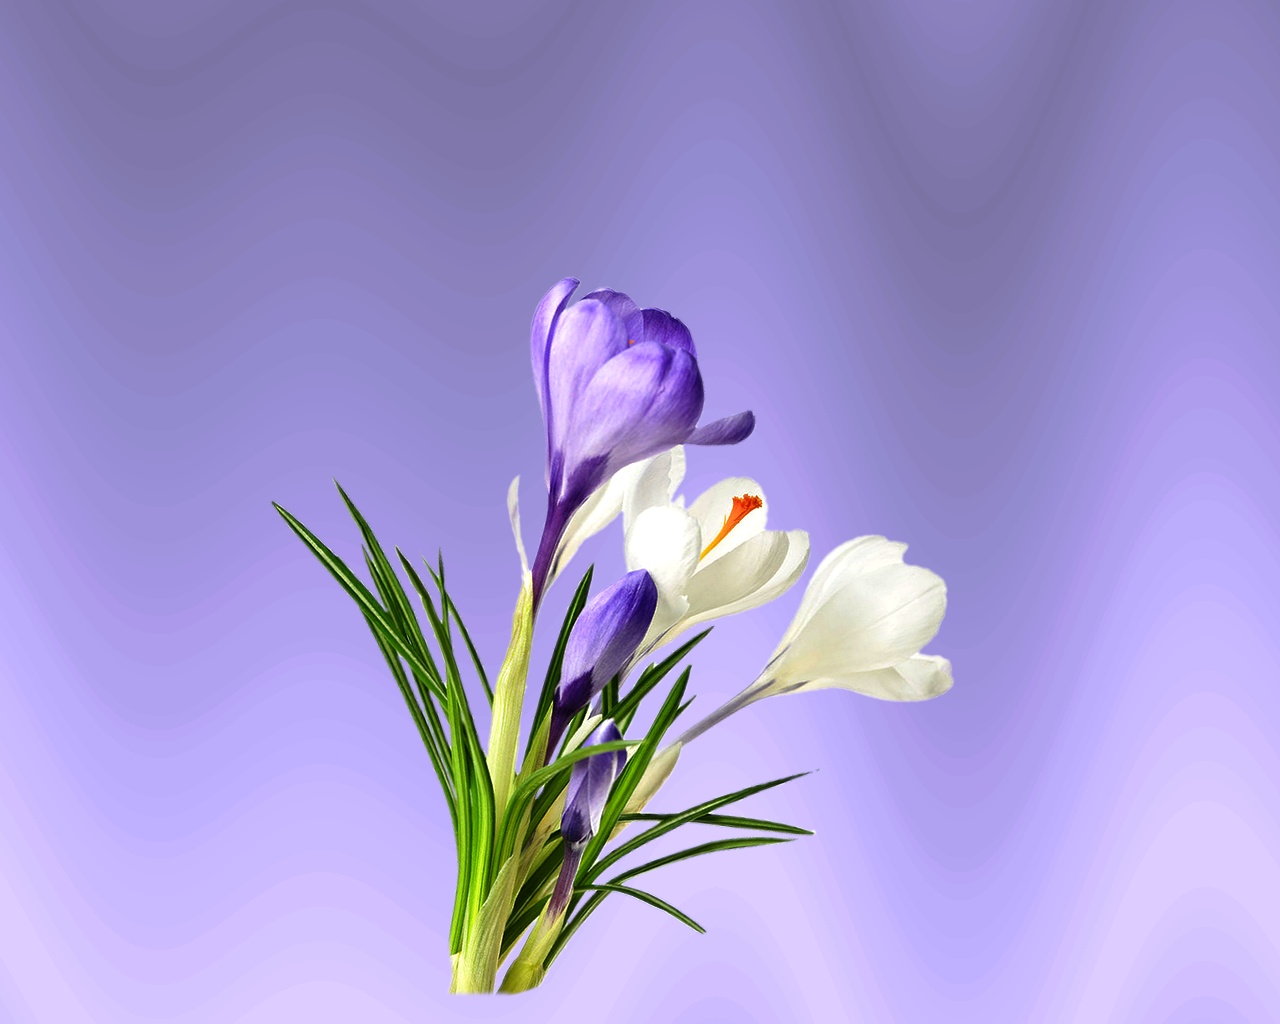 Kinszi Böngészde: Tavaszi virágok monitorra